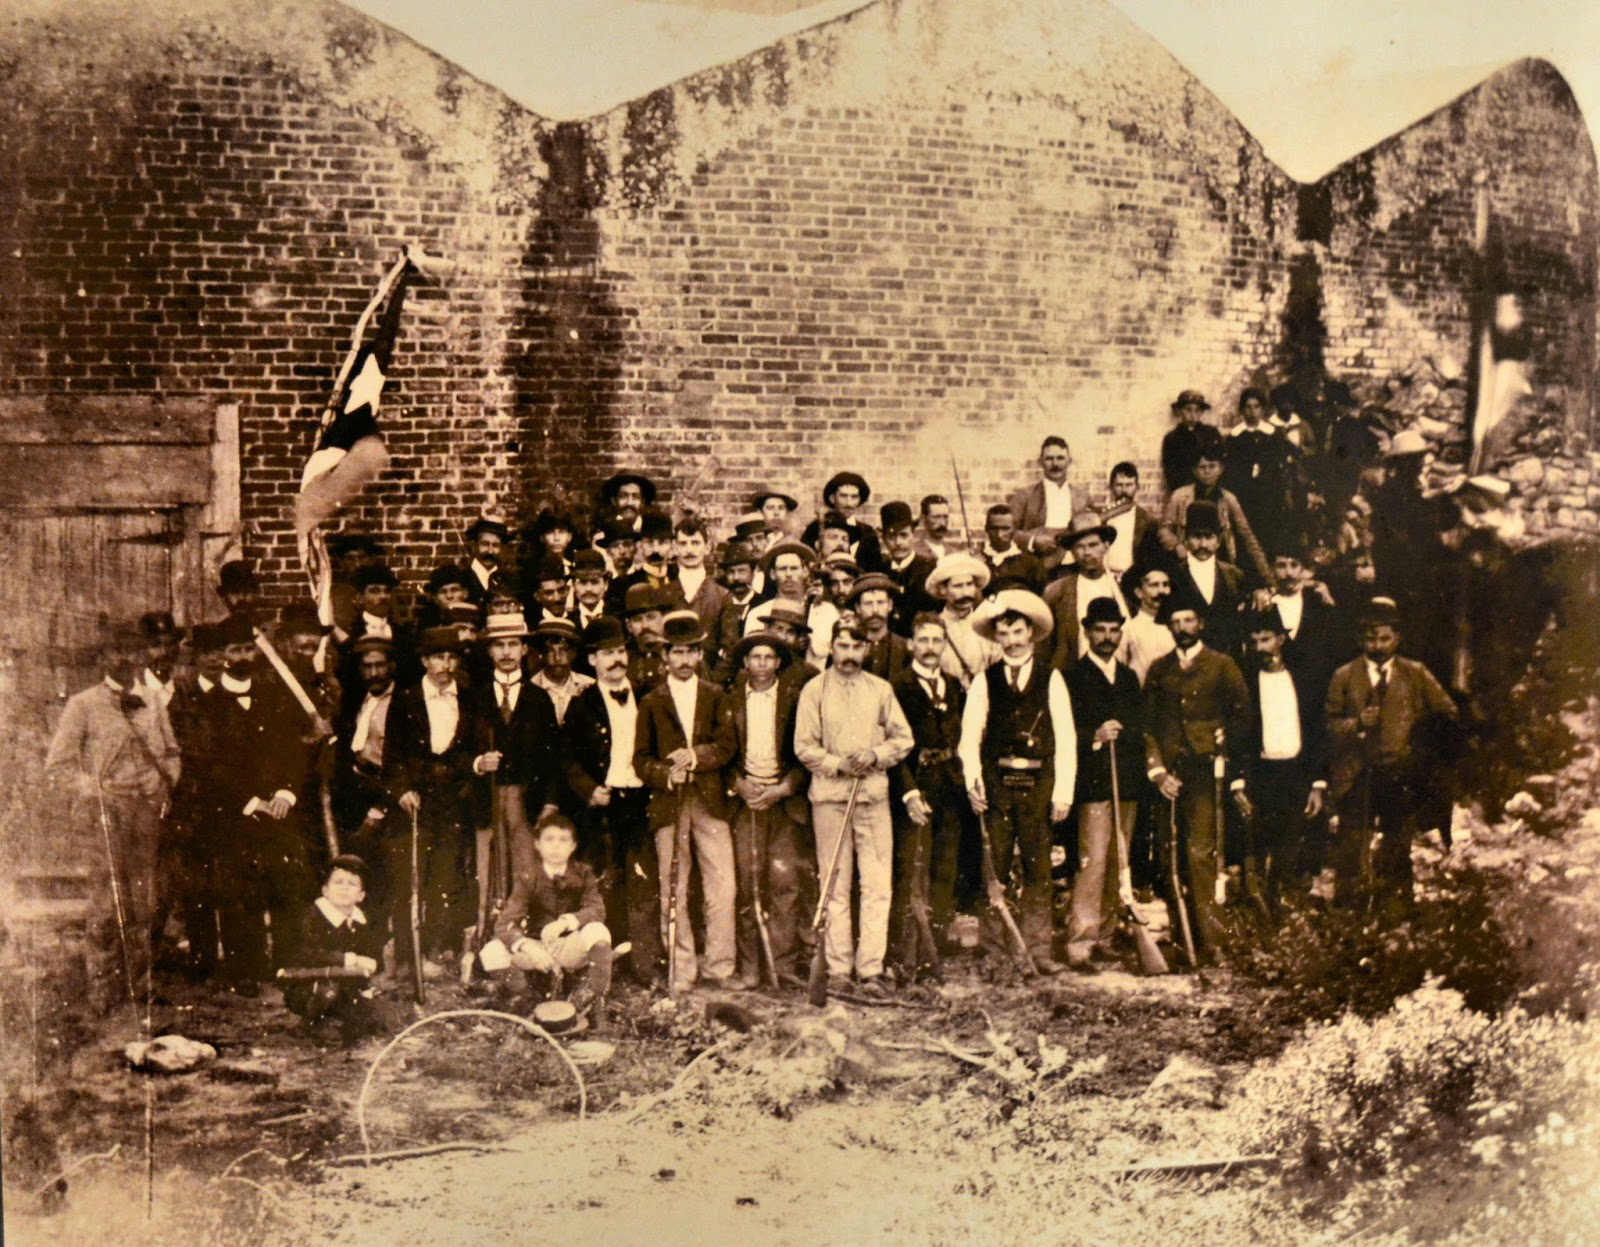 José_Martí_con_grupo_de_emigrados_cubanos_en_el_antiguo_fuerte_Martello_Tower_en_Cayo_hueso,_Estados_Unidos_1893 (2)